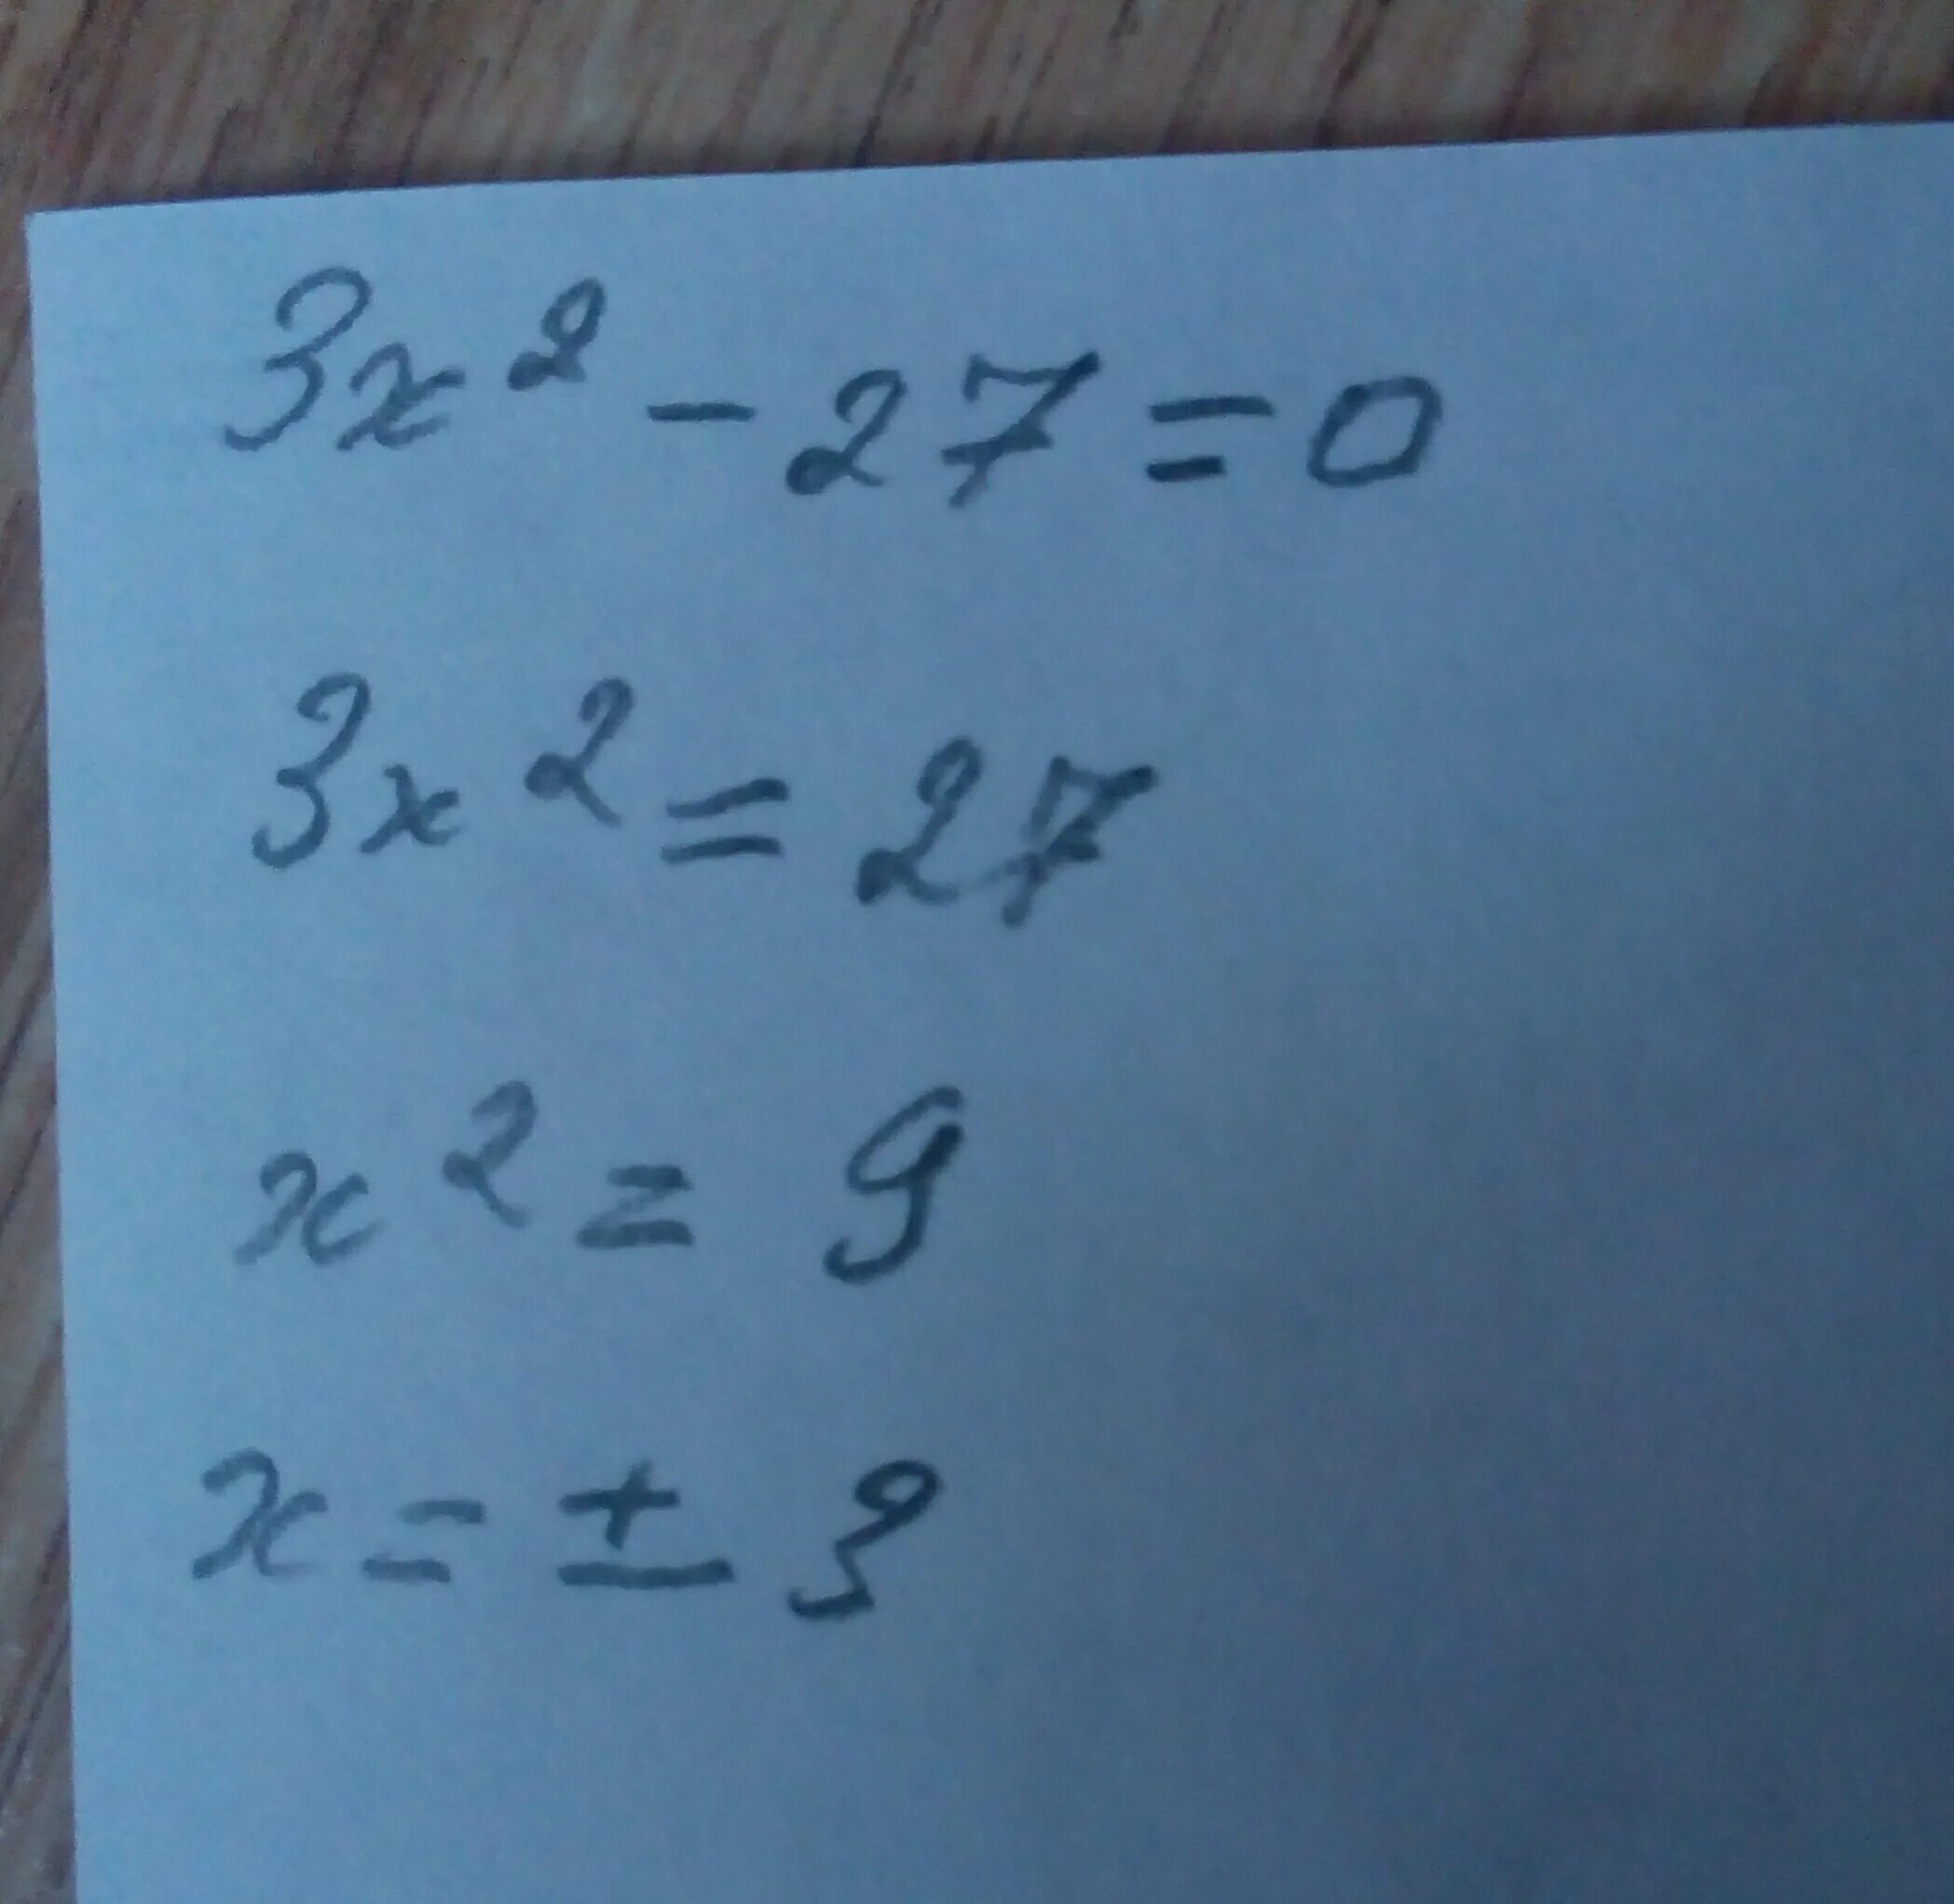 Икс квадрате +7 Икс равно -13. Ранои кс2 мм. Икс равняется 9. Икс равен 34.